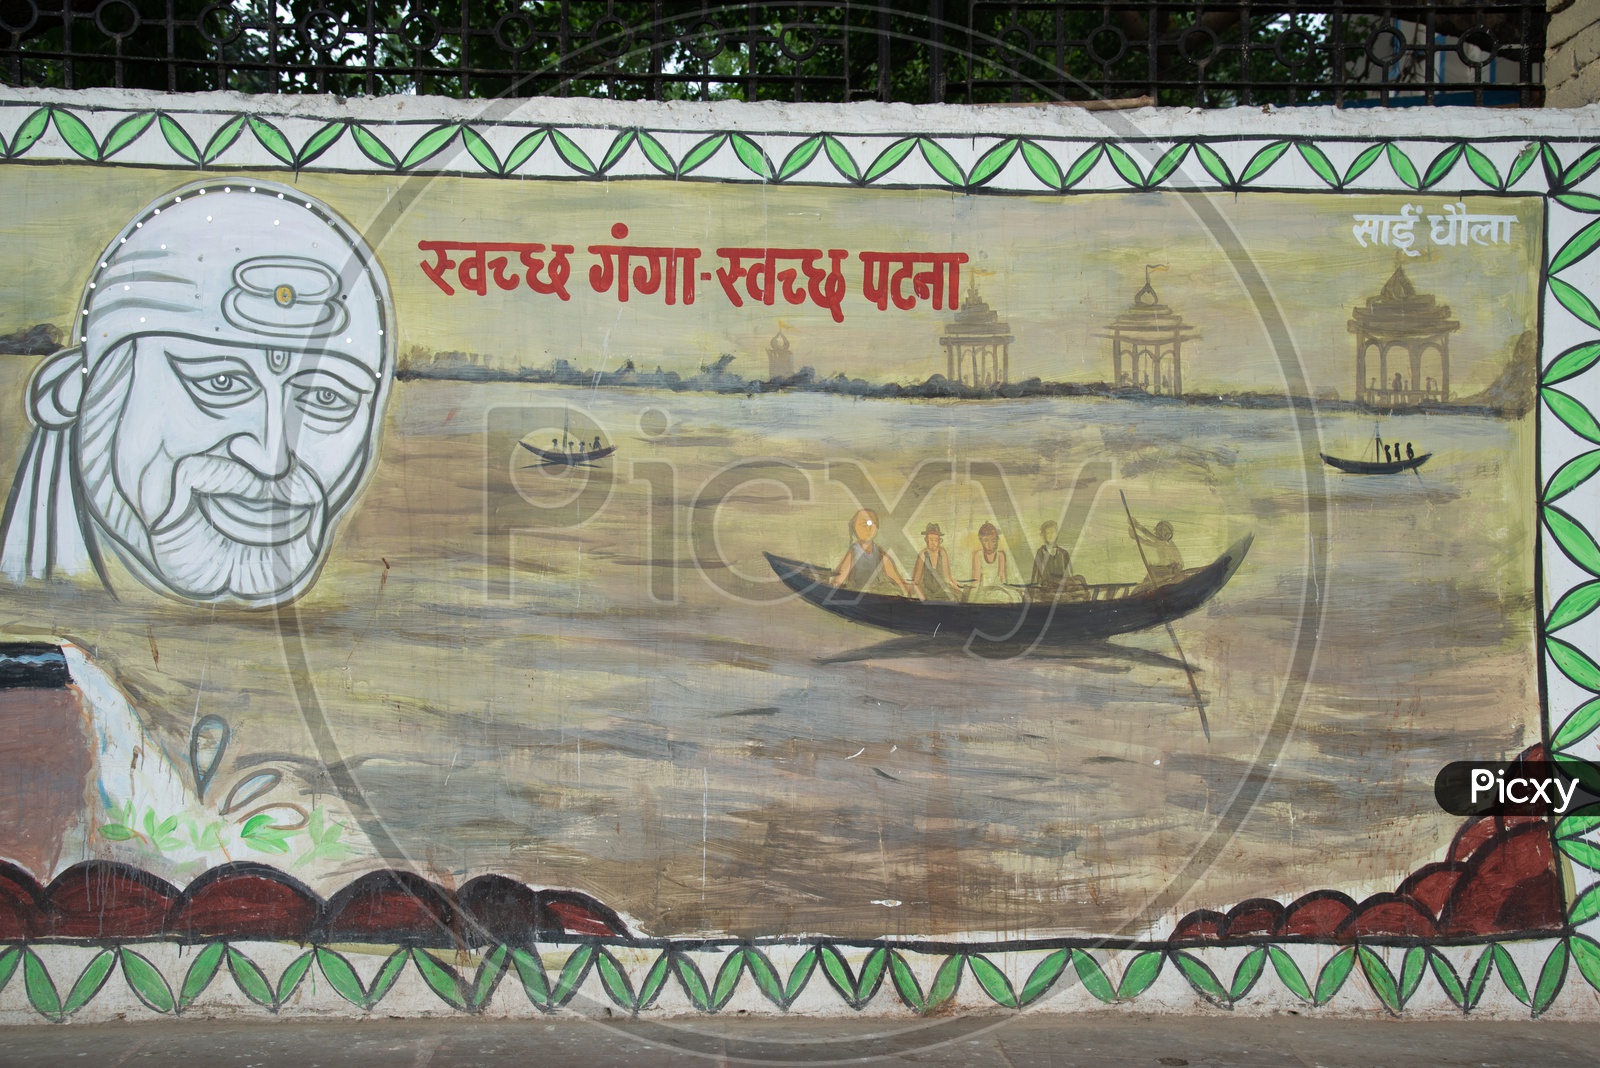 Swachh Ganga - Swach Patna  Slogans Written On The Walls Of Patna